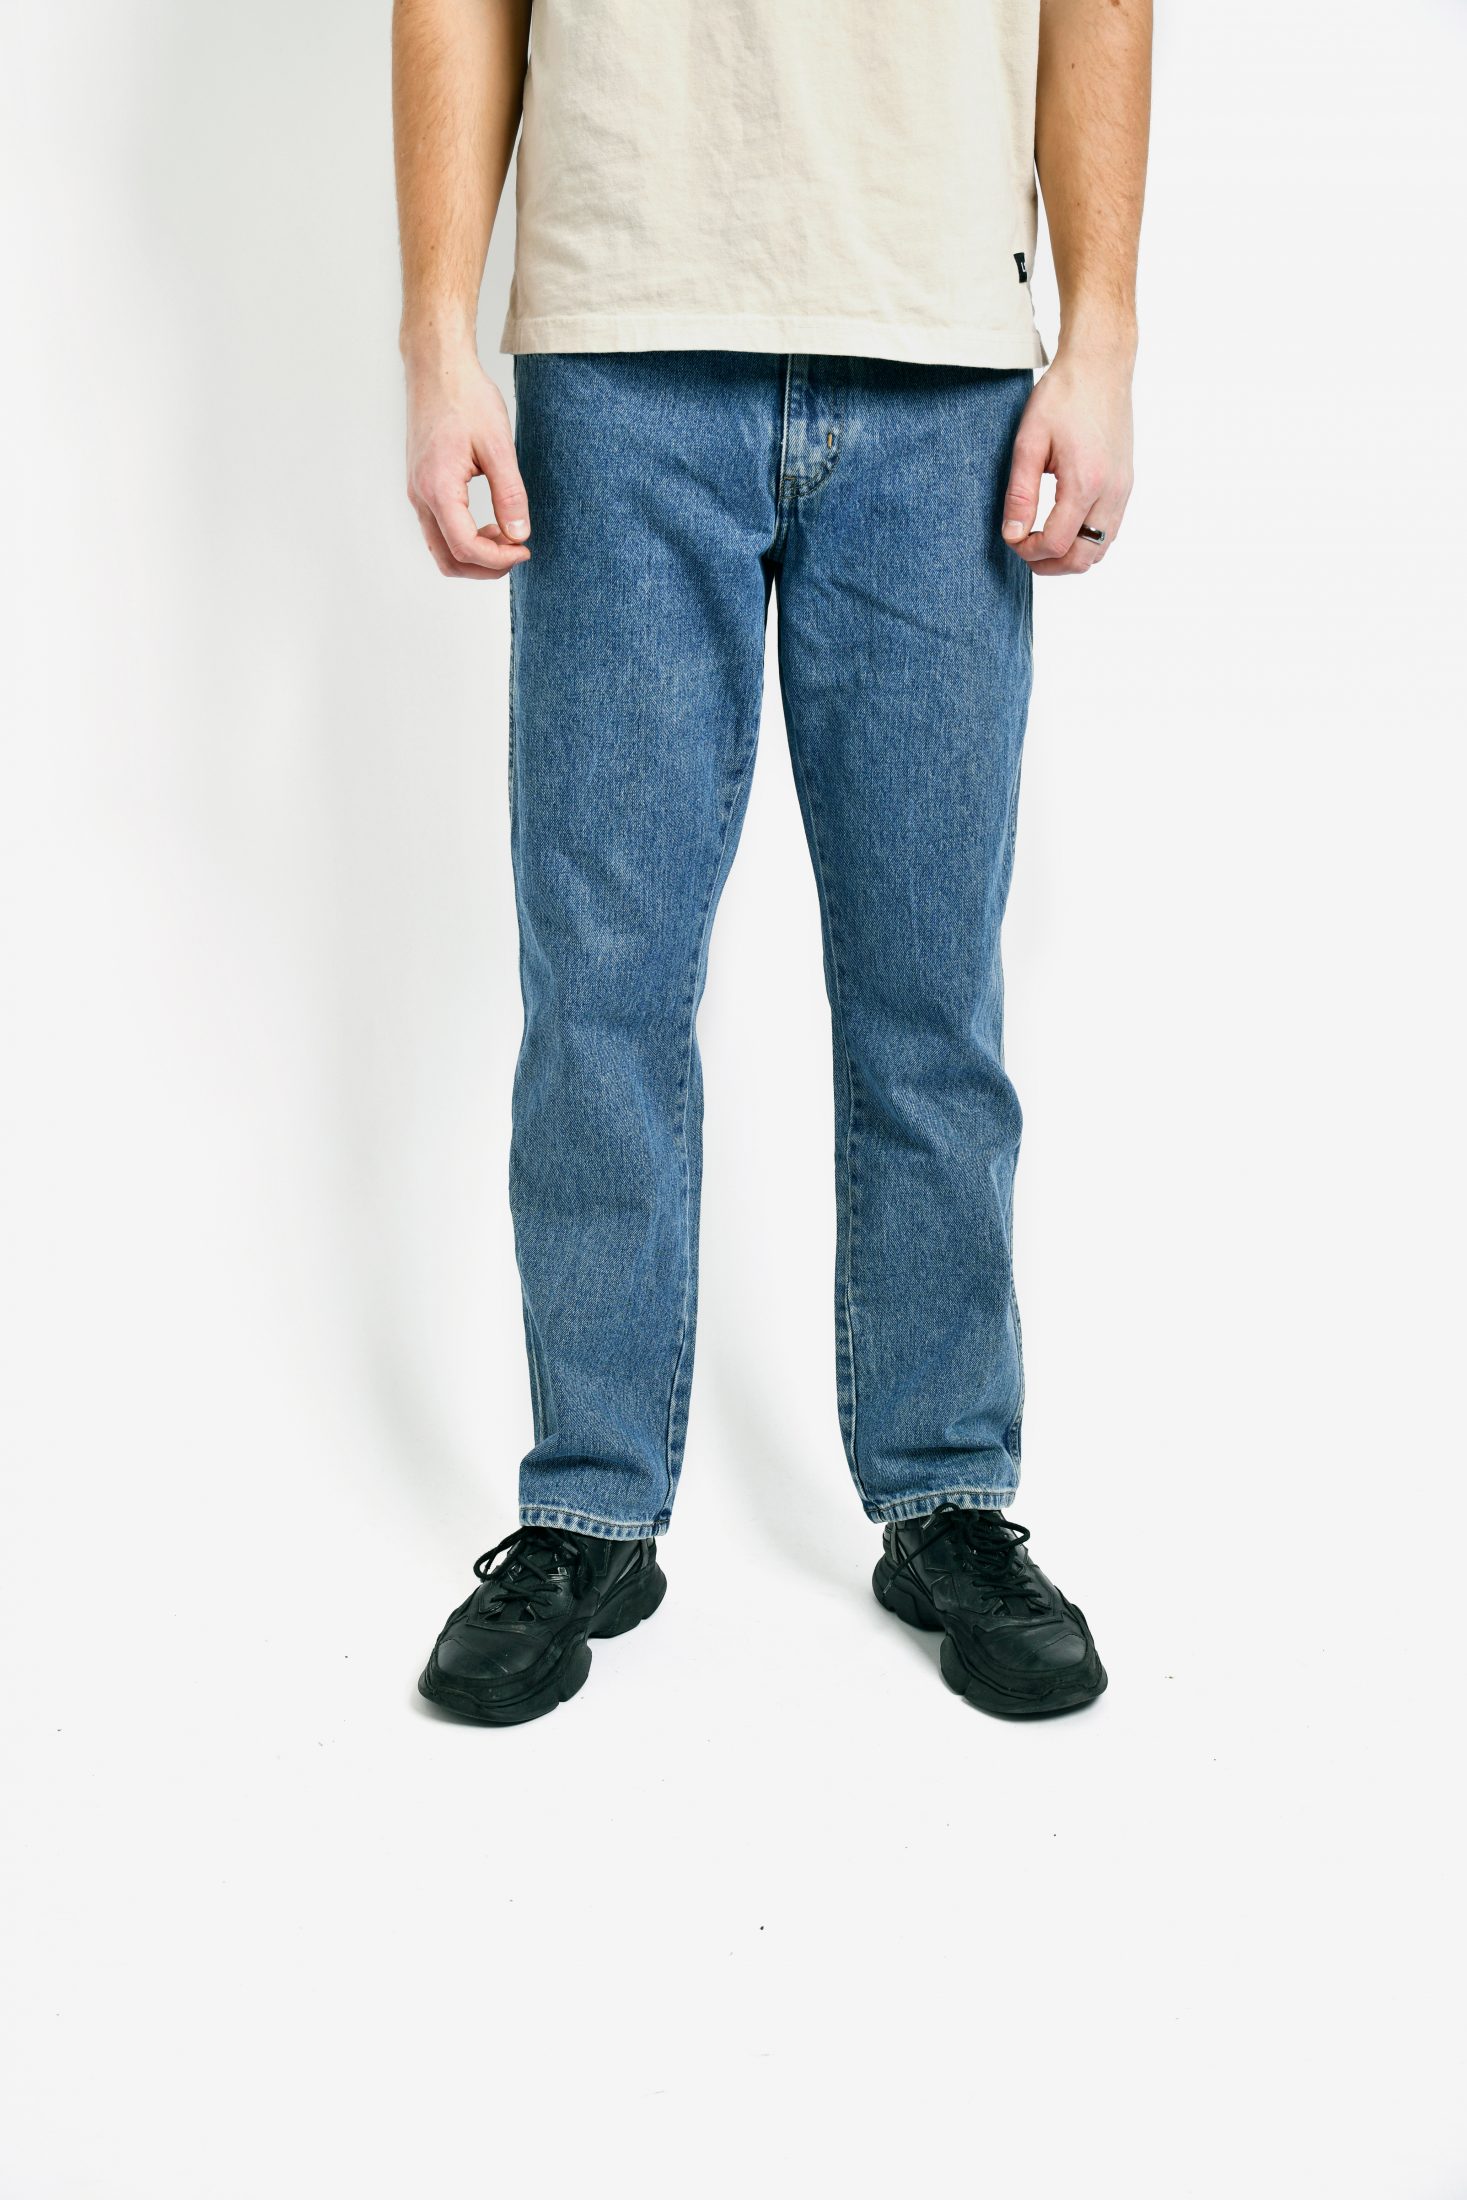 Vintage WRANGLER mens jeans | Vintage clothes online for men